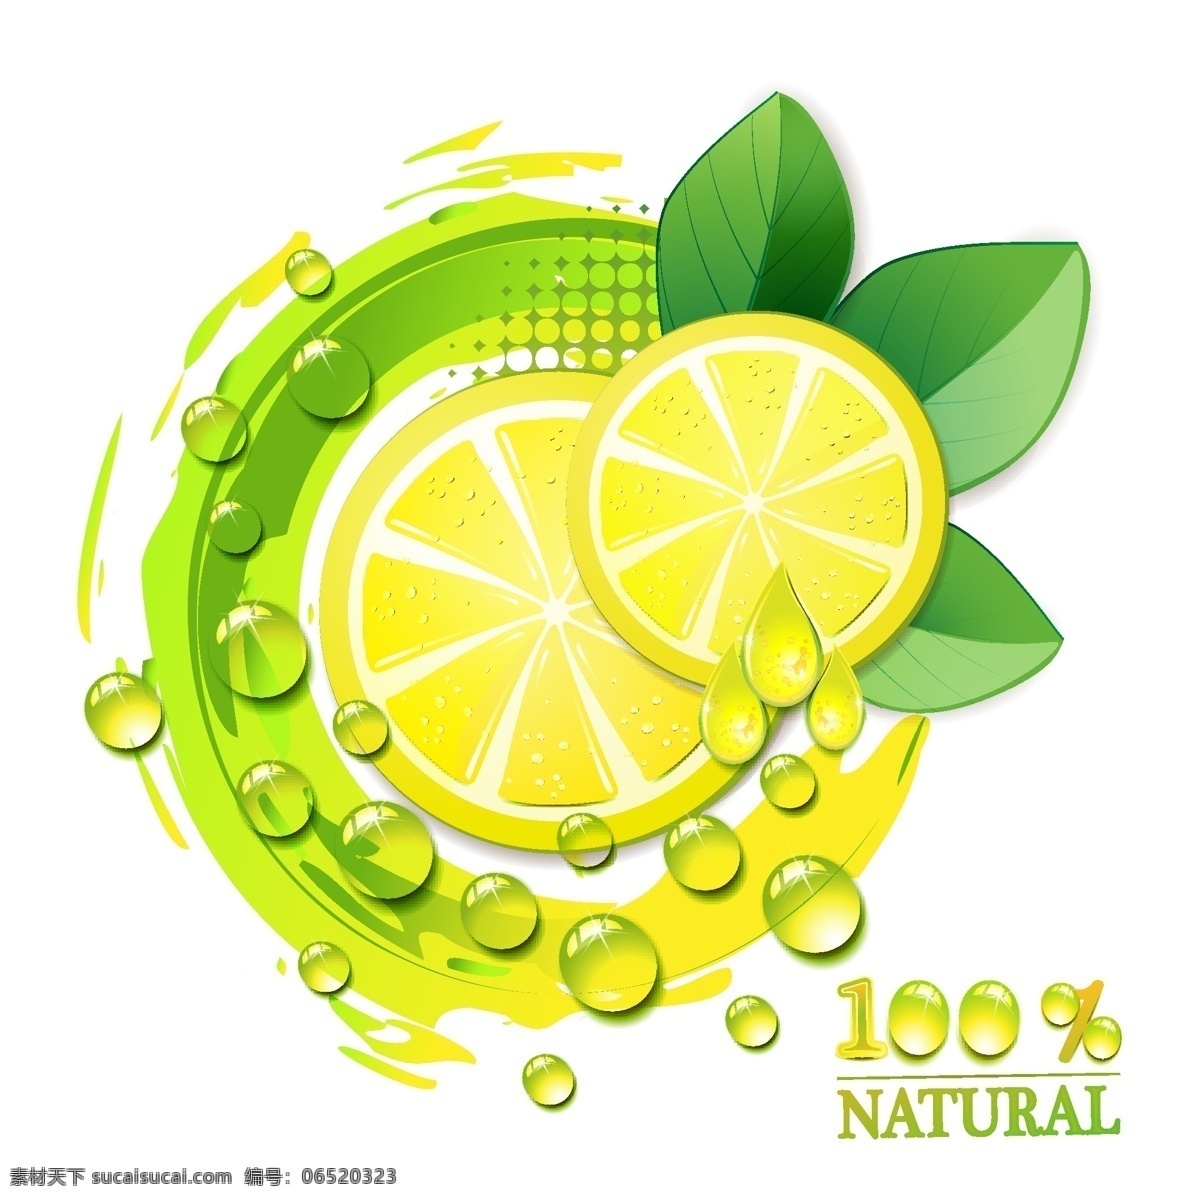 动感 柠檬 柠檬汁 水珠 水滴 水果 标签 时尚 梦幻 原生态 质量 可靠 保证 百分百 背景 底纹 矢量 水果矢量 生物世界